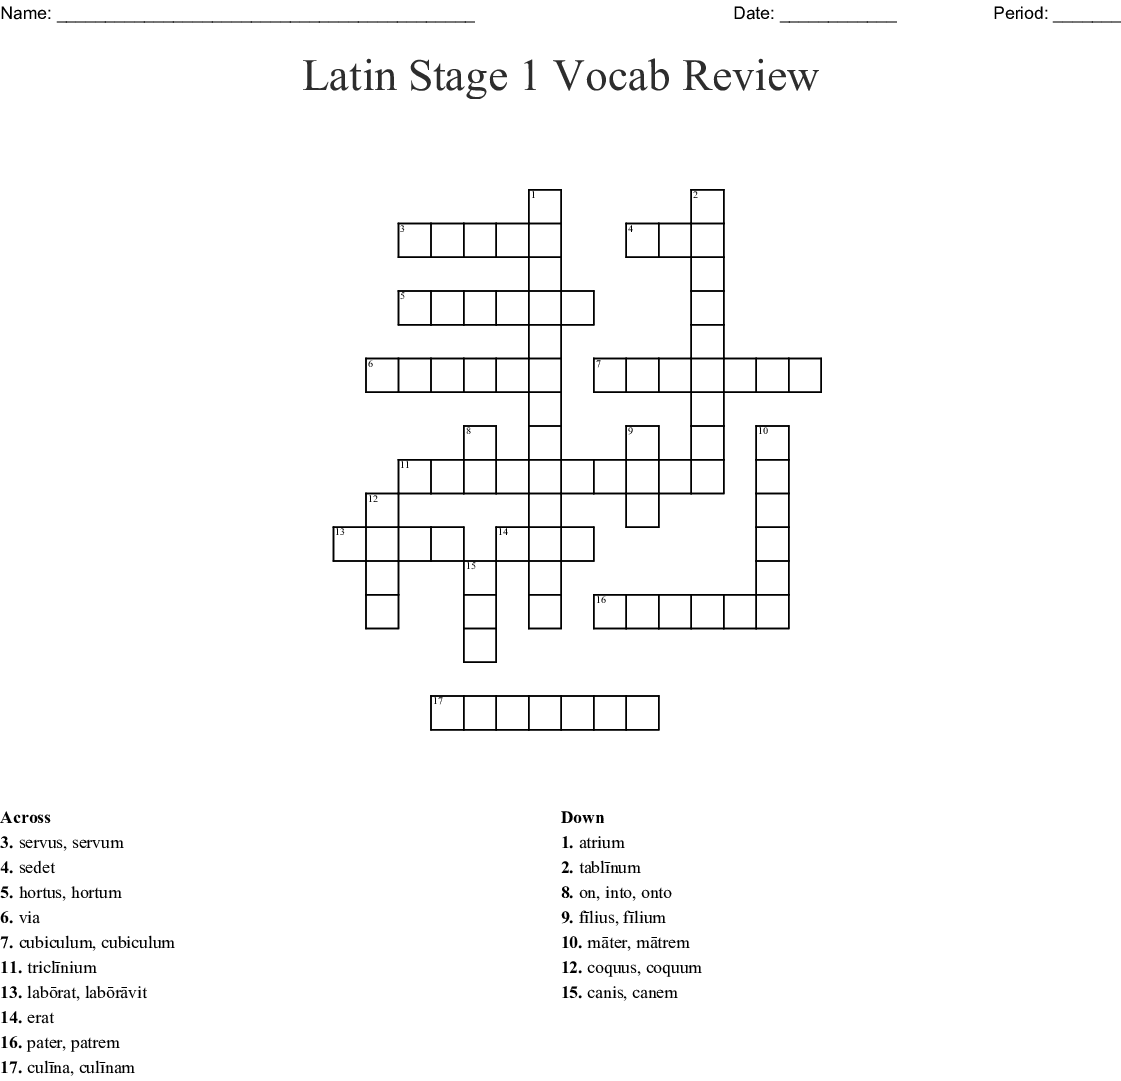 Latin vocab review